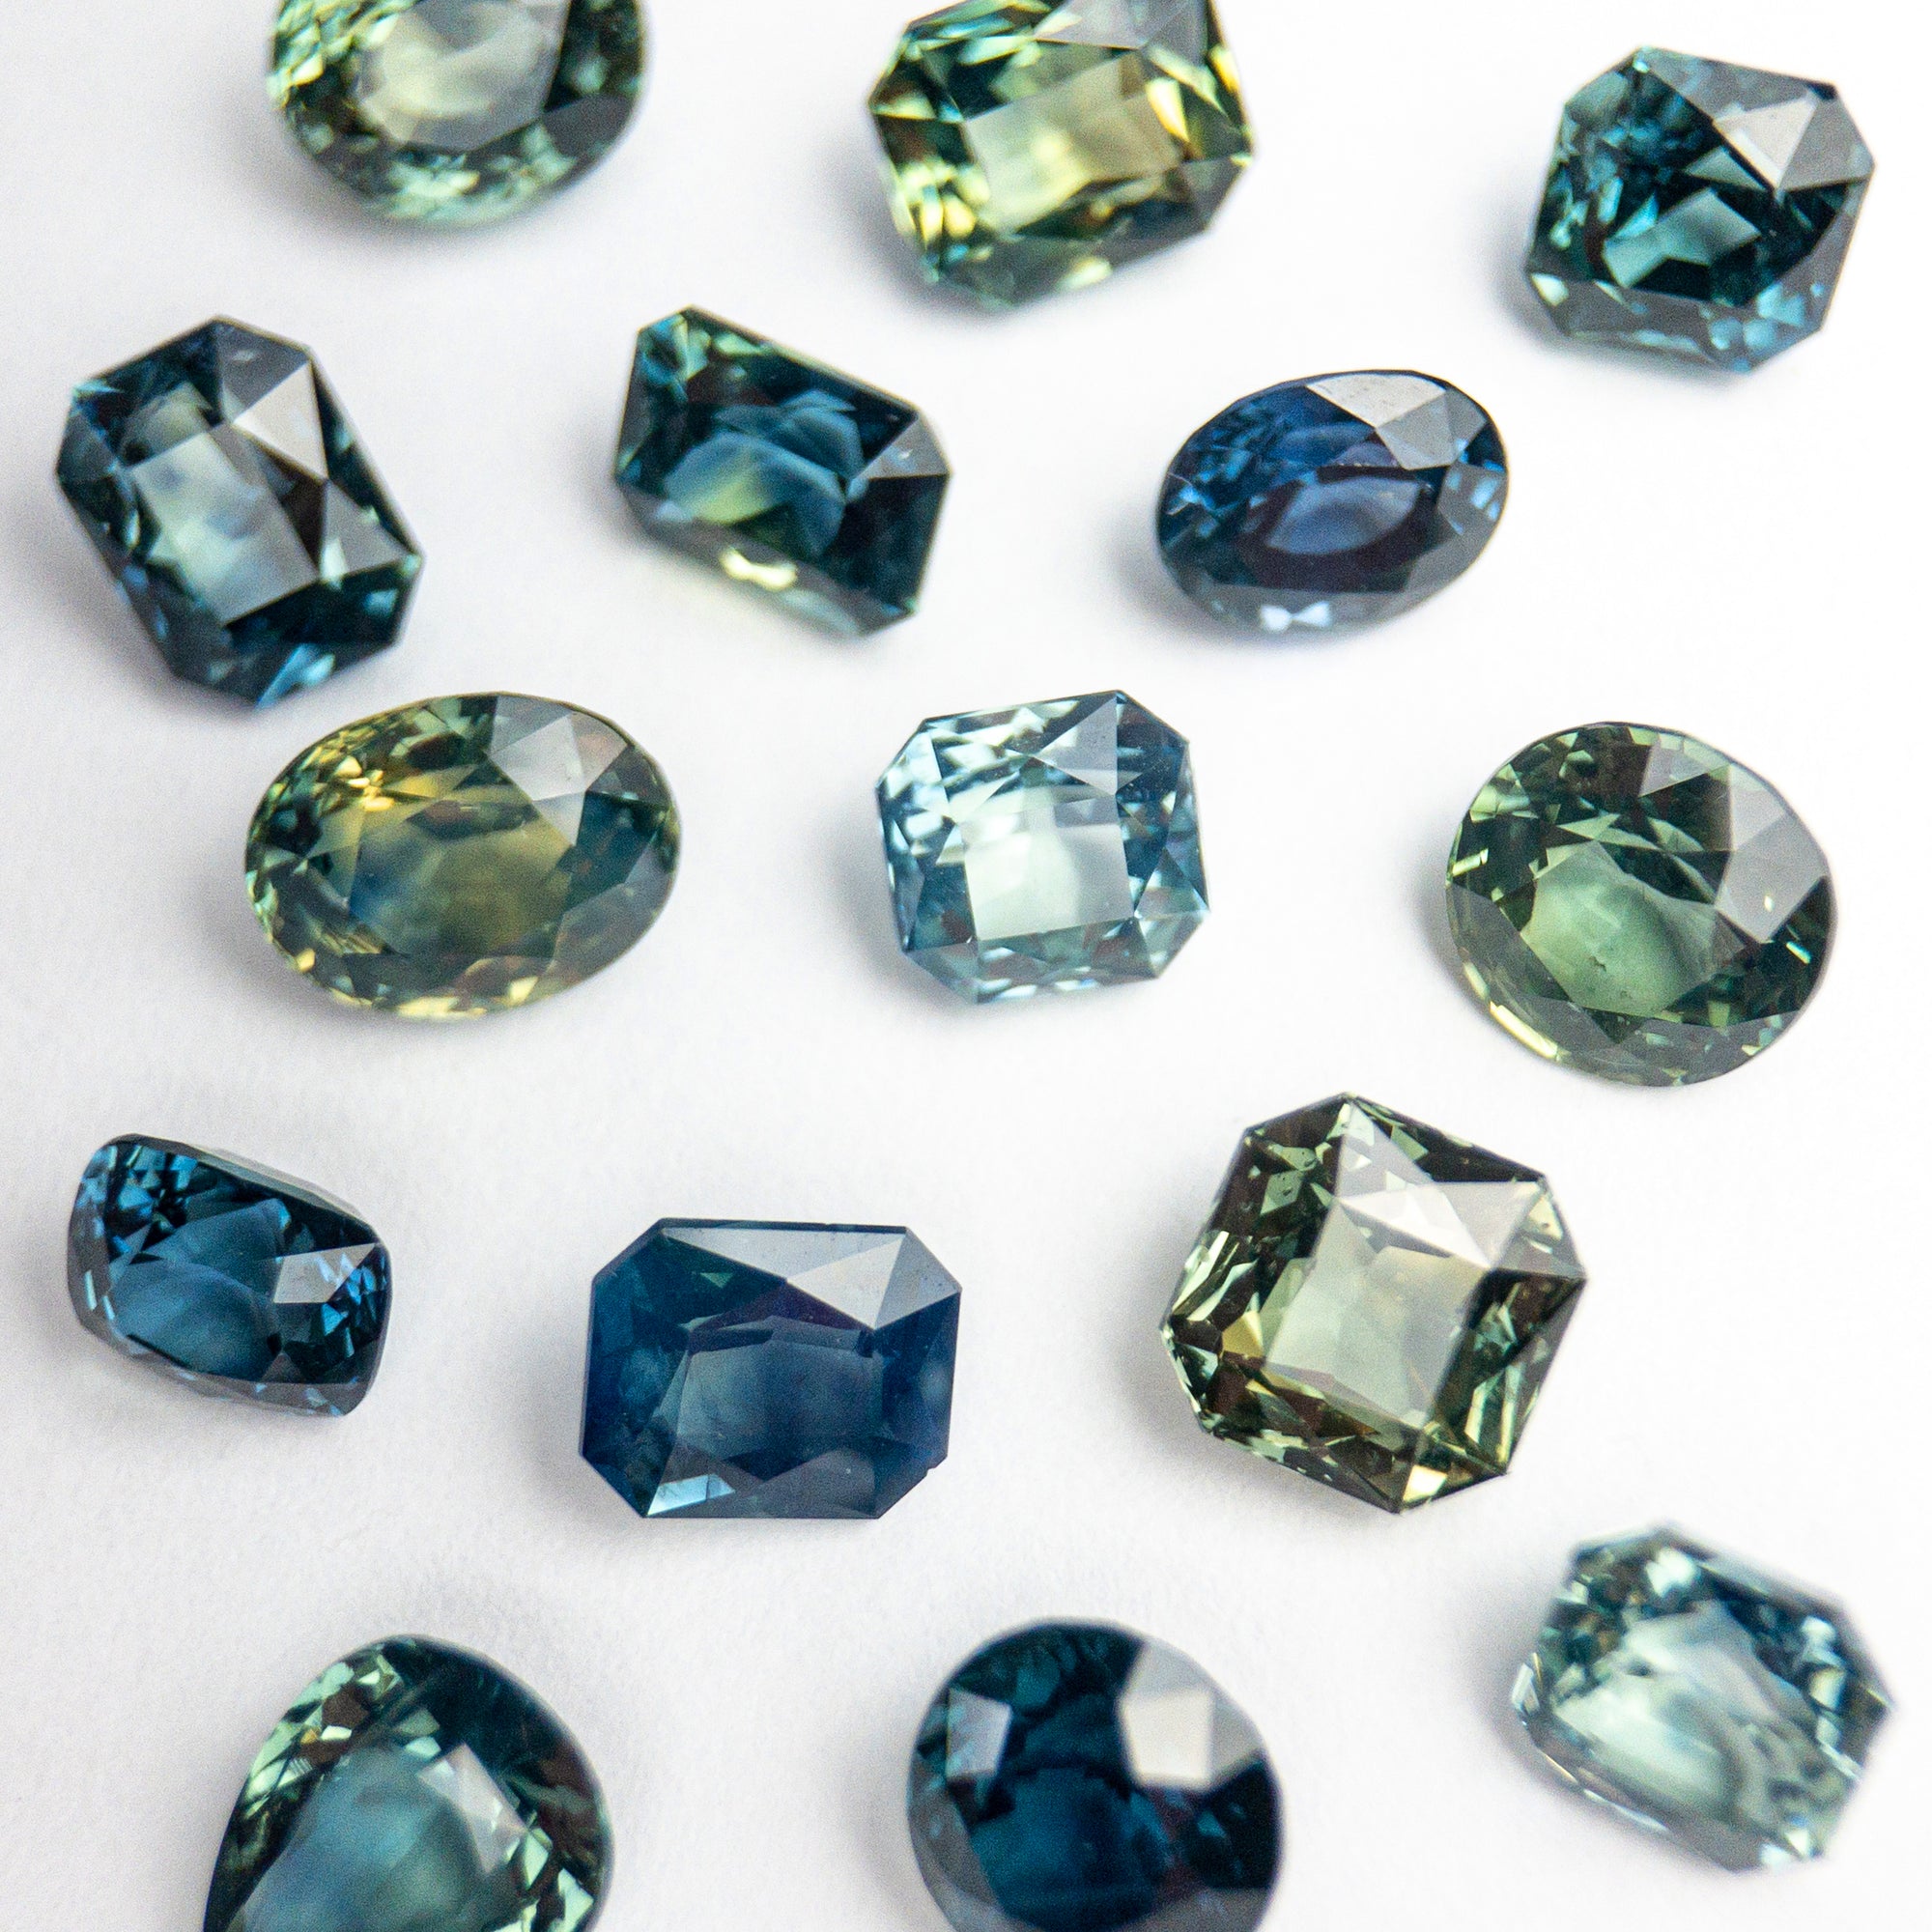 Sapphires